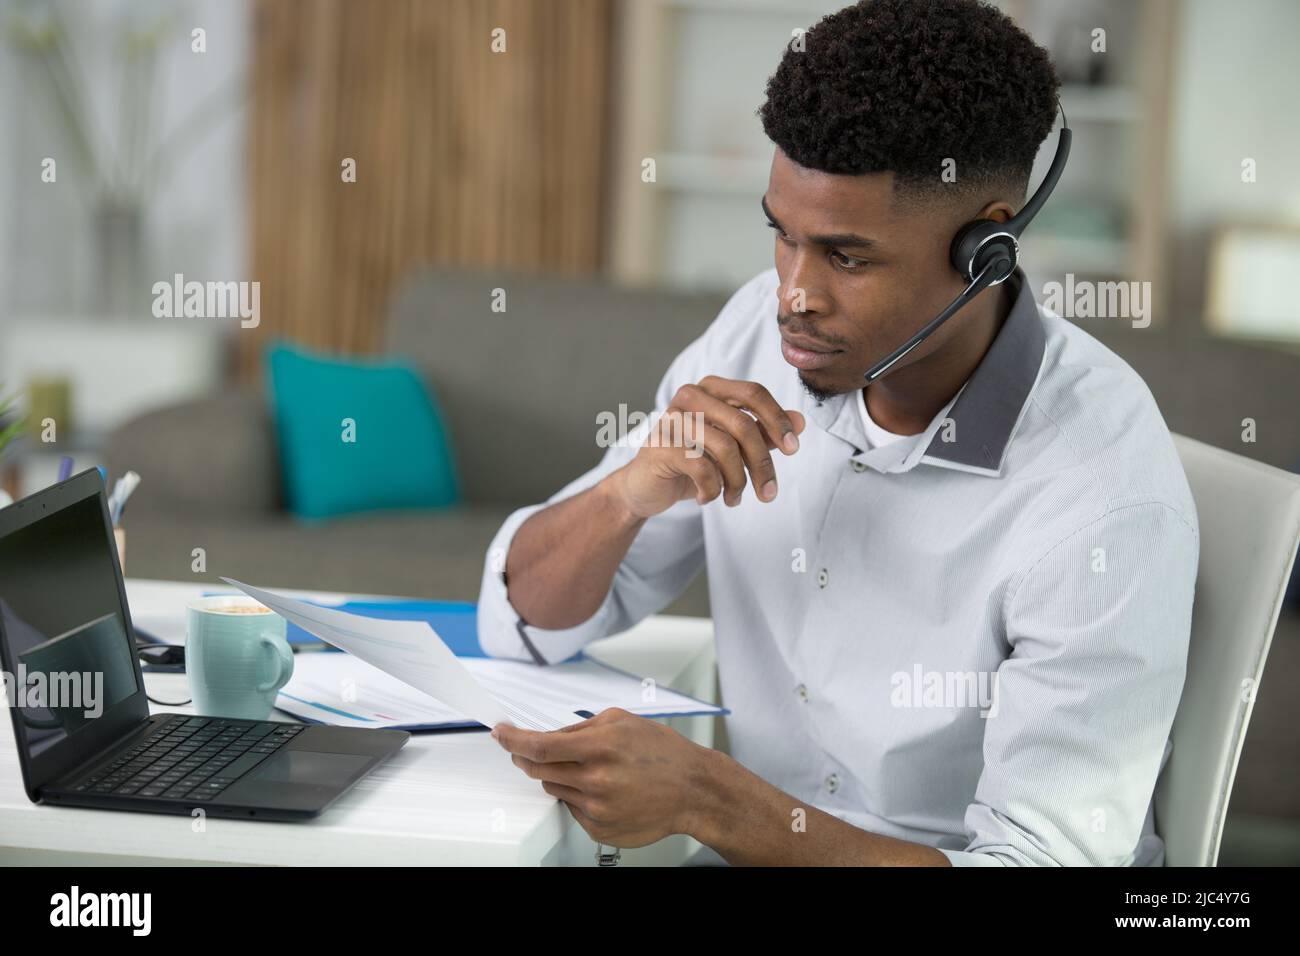 Schwarzer, männlicher Callcenter-Mitarbeiter, der auf den Bildschirm schaut Stockfoto